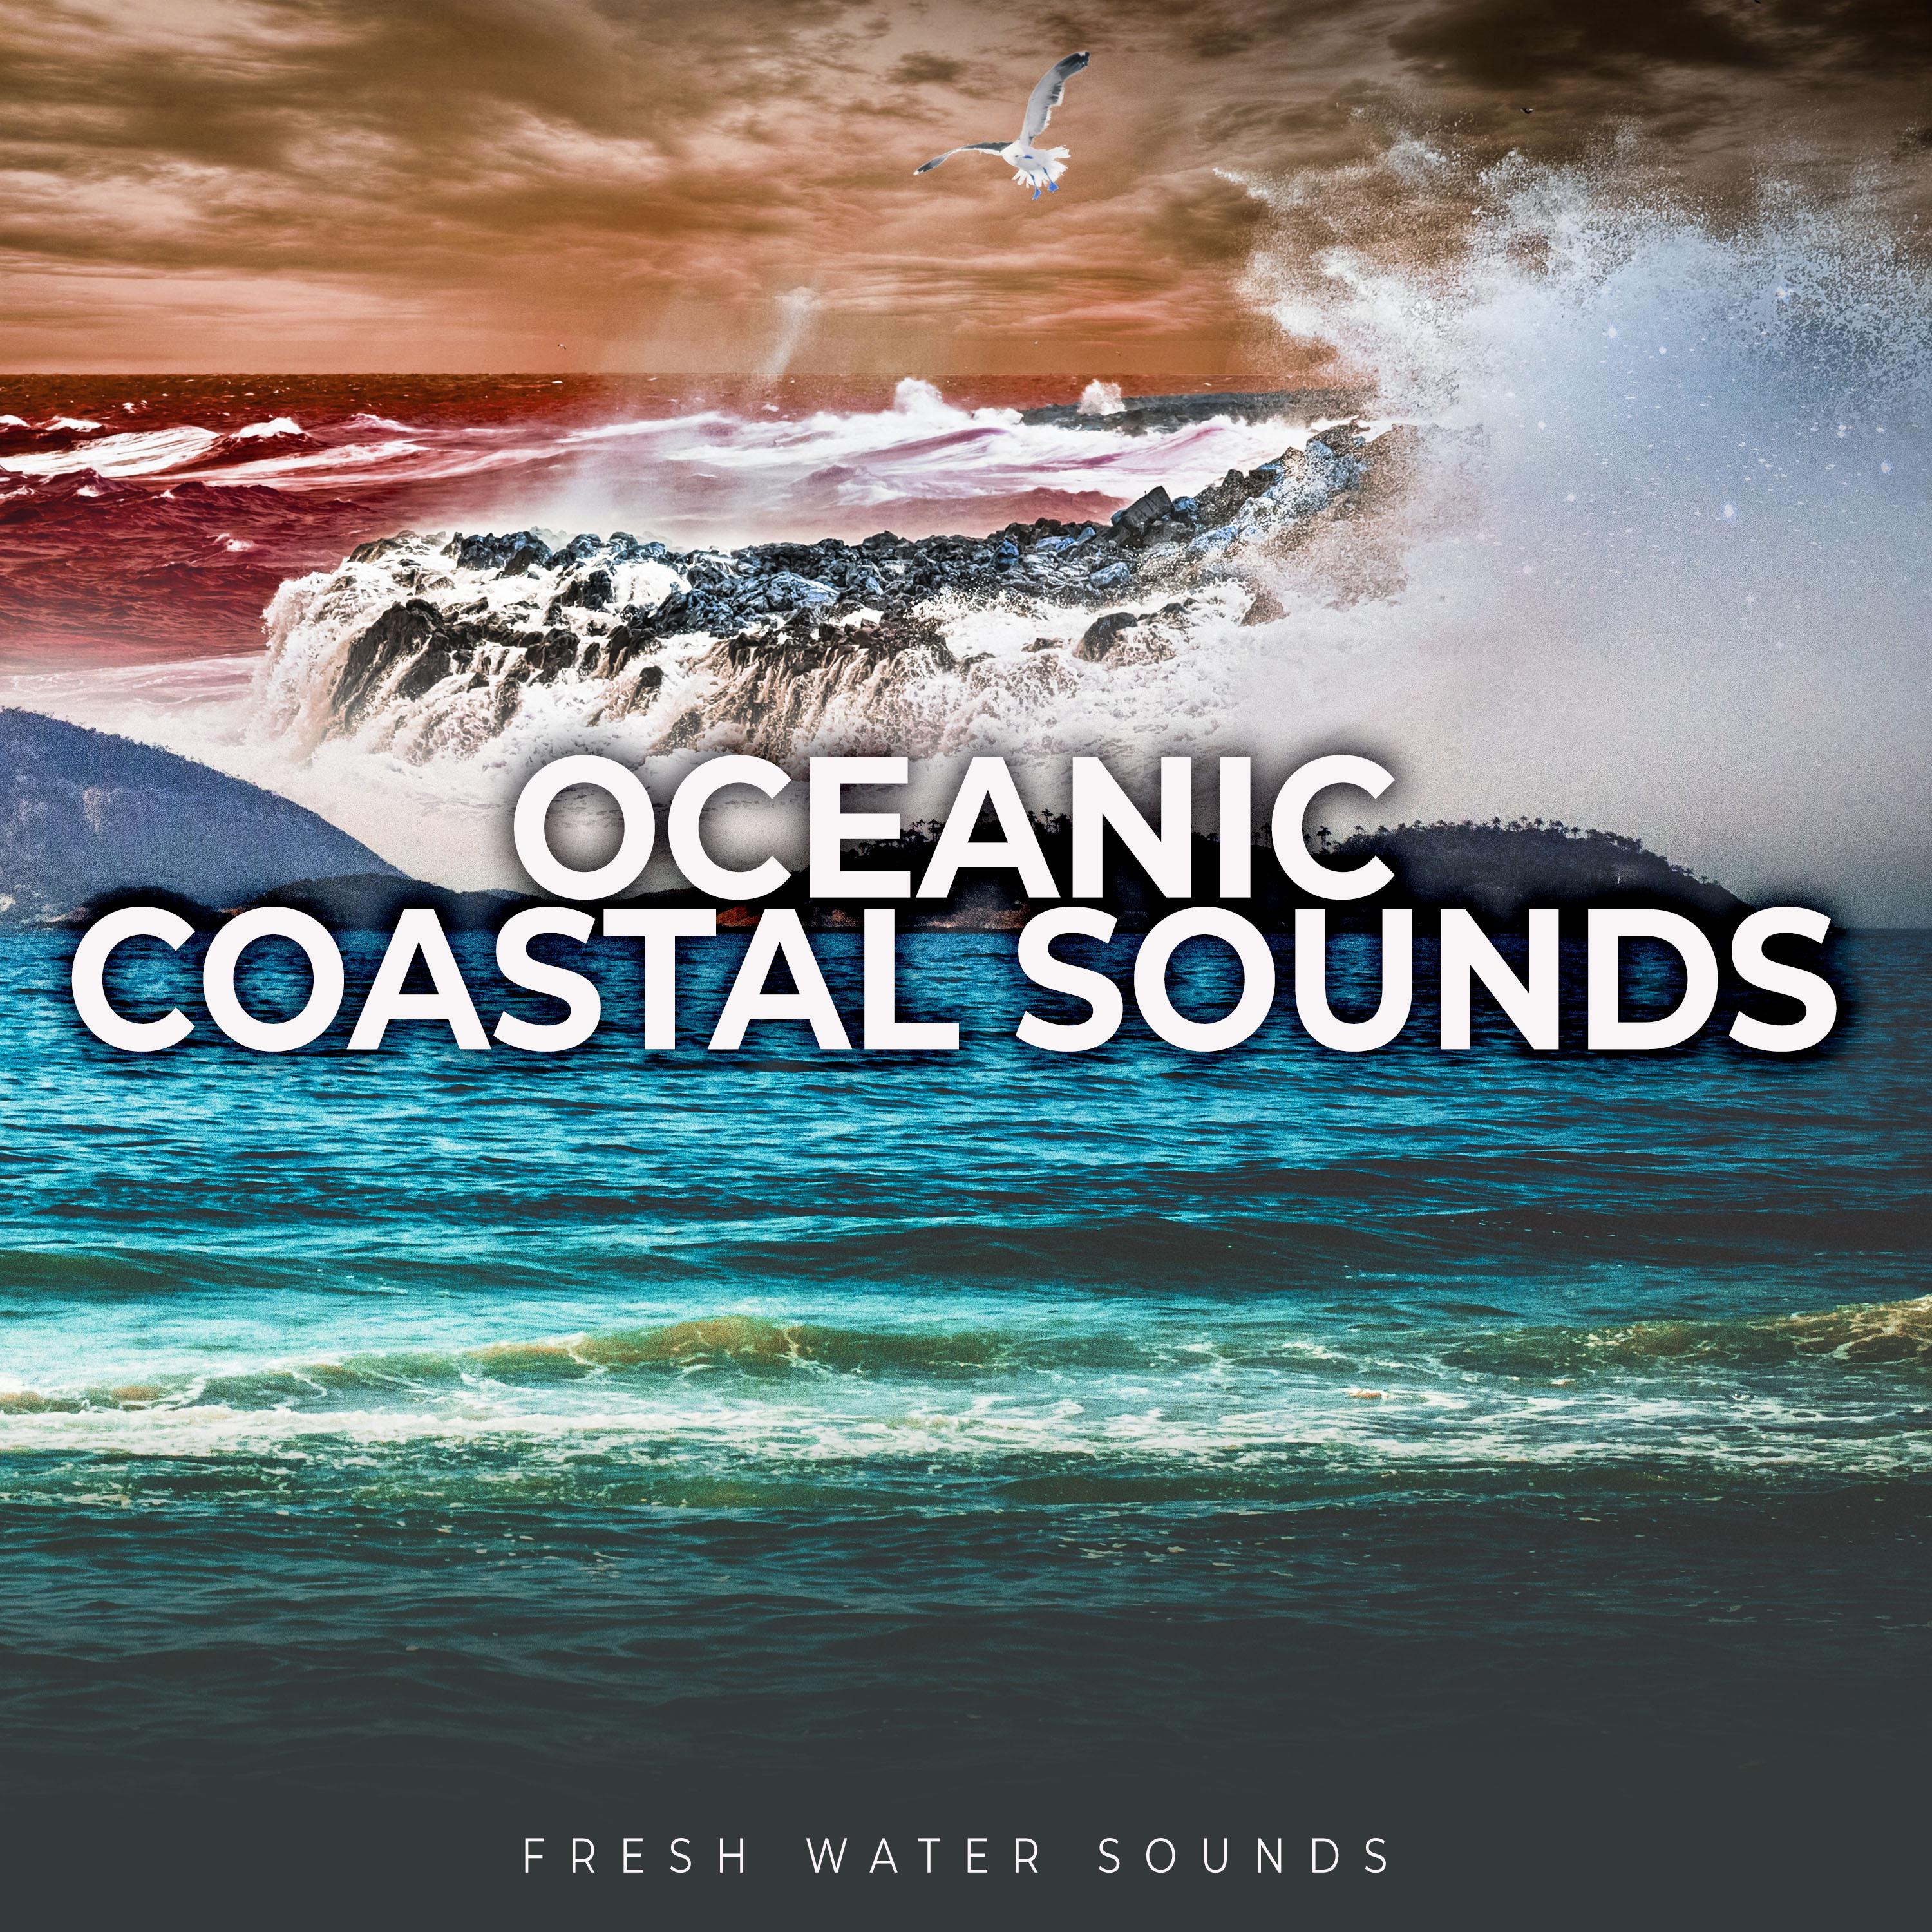 Oceanic Coastal Sounds